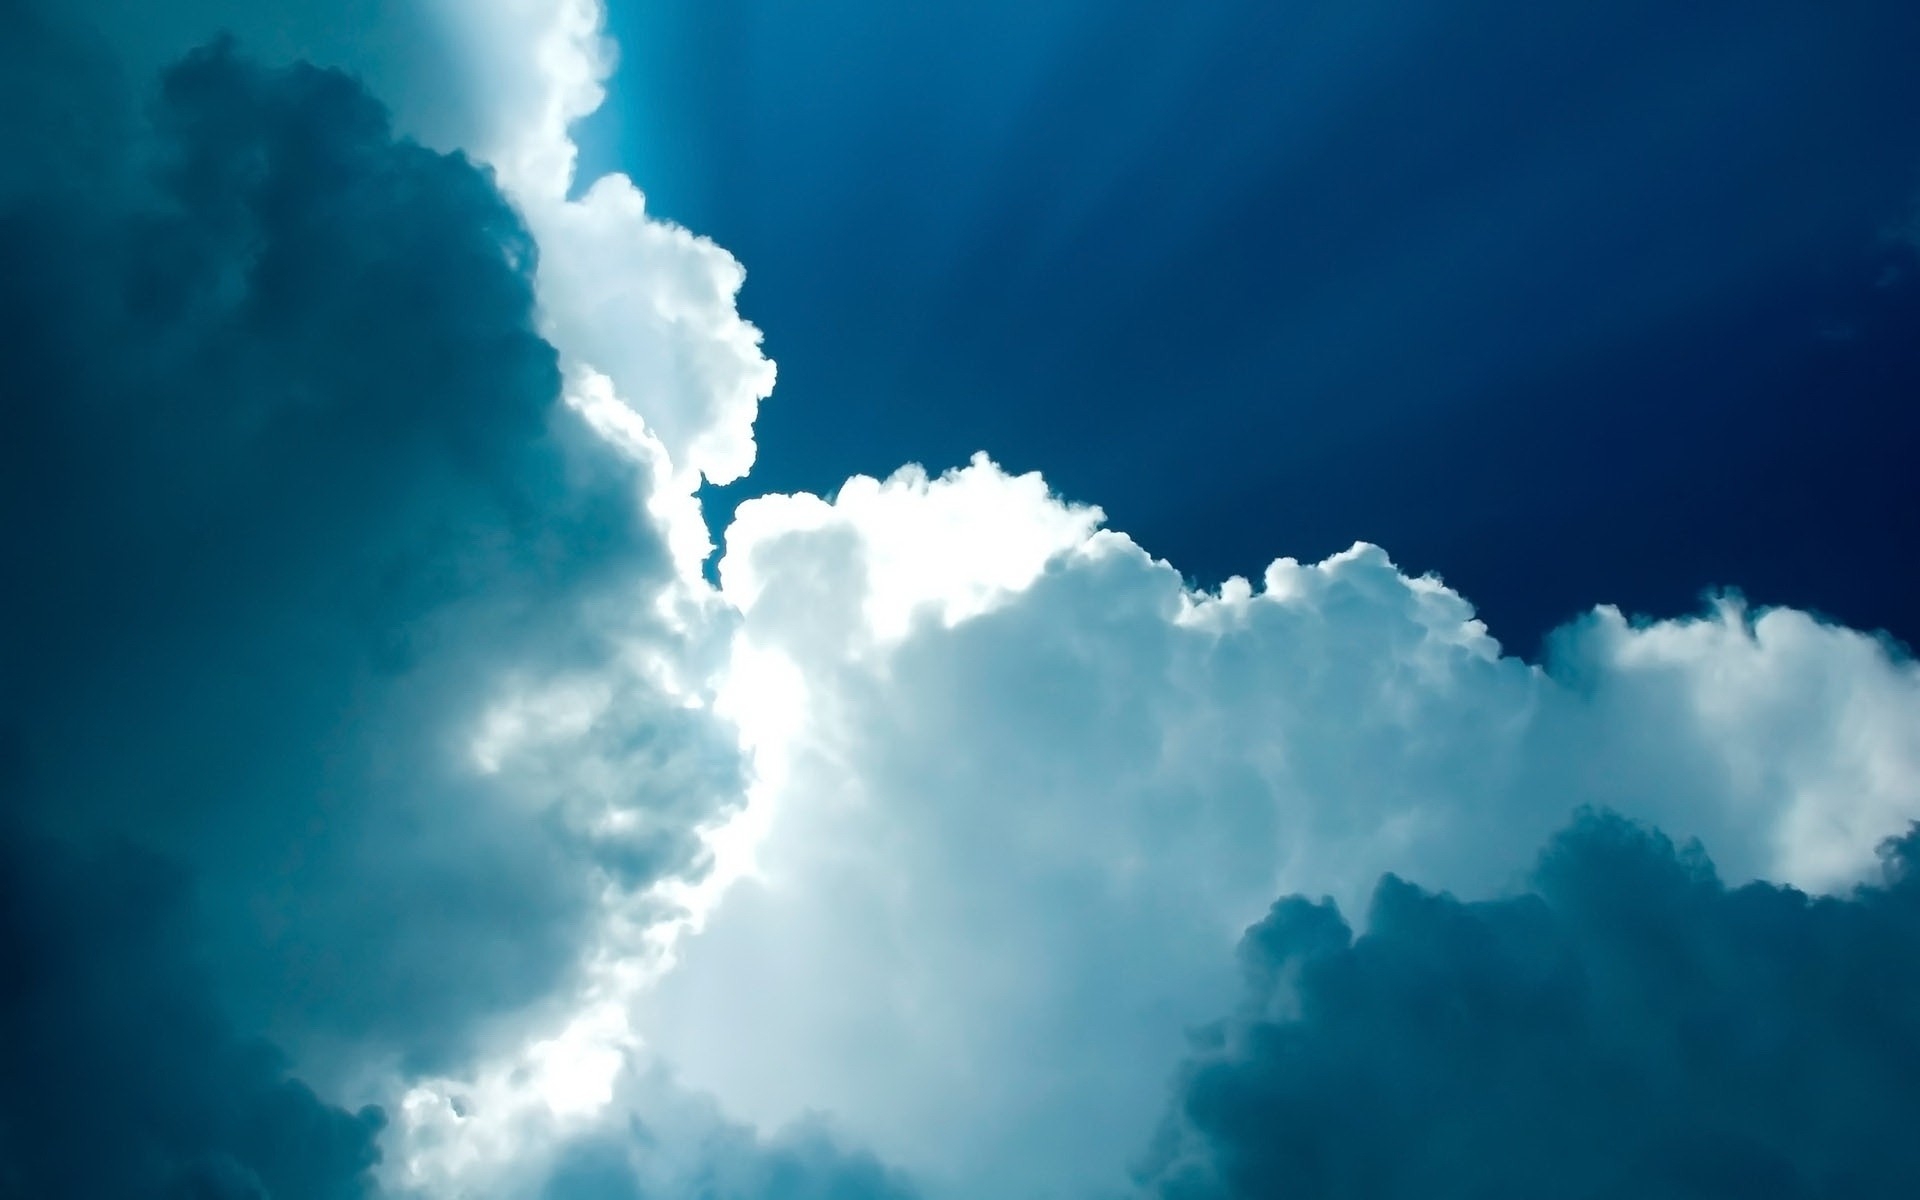 Fondos de Pantalla Nubes Blancas y Cielo Azul, Imágenes y Fotos Gratis